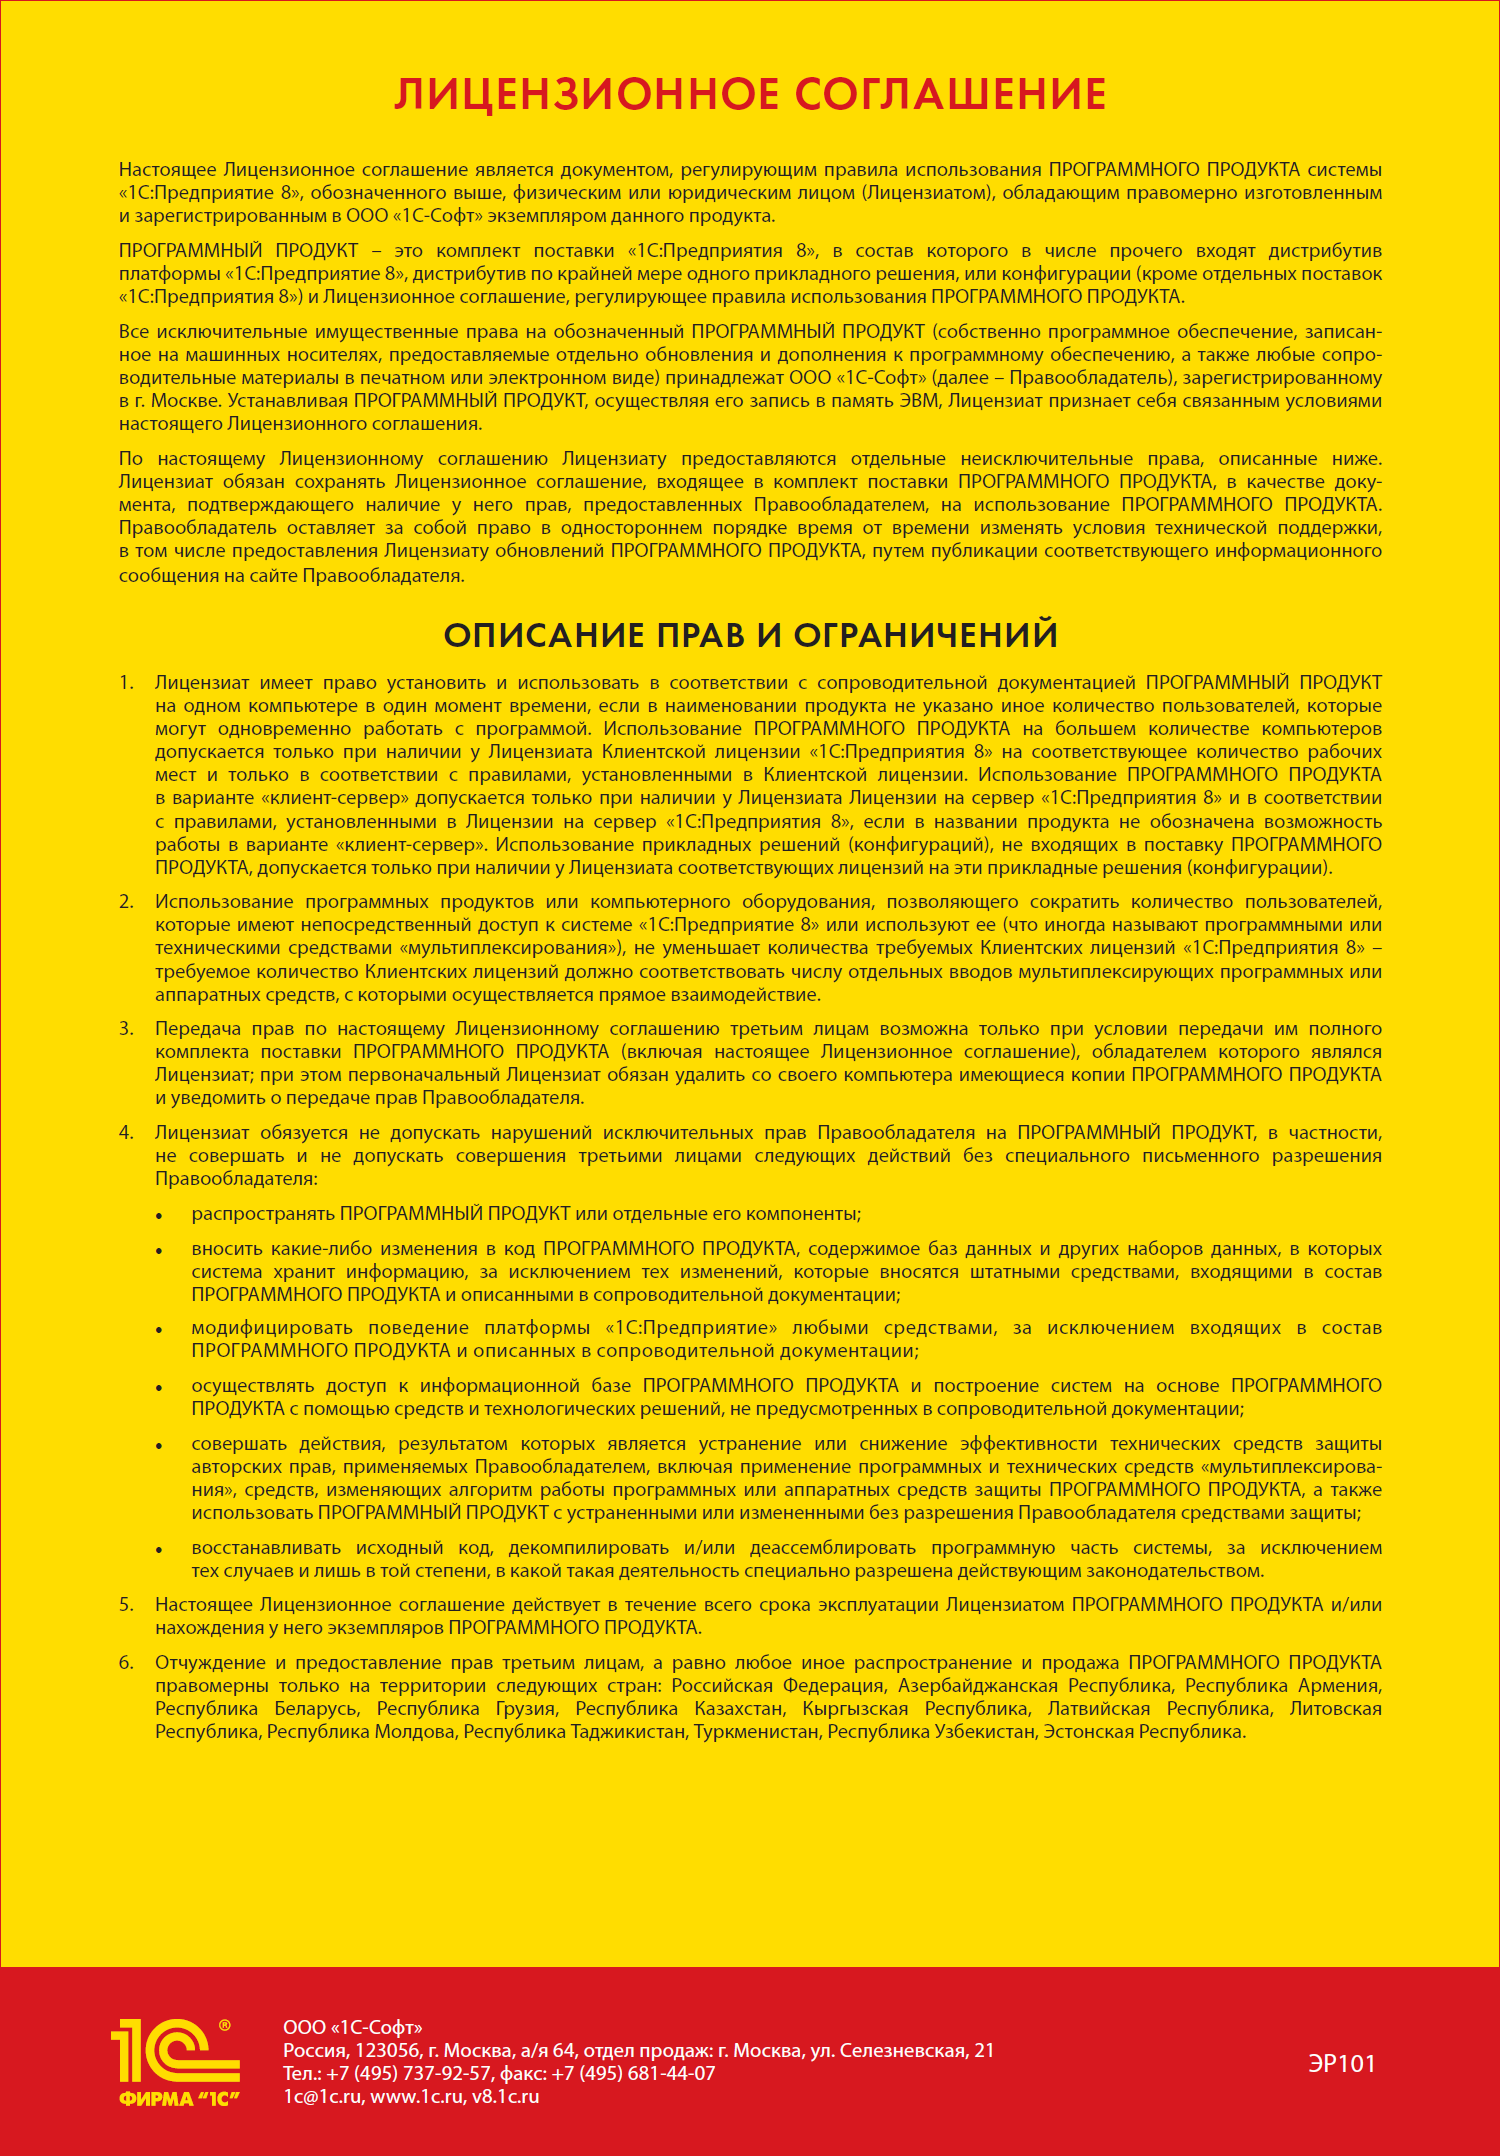 Лицензионное соглашение основной поставки программы 1С:Предприятие 8 ПРОФ